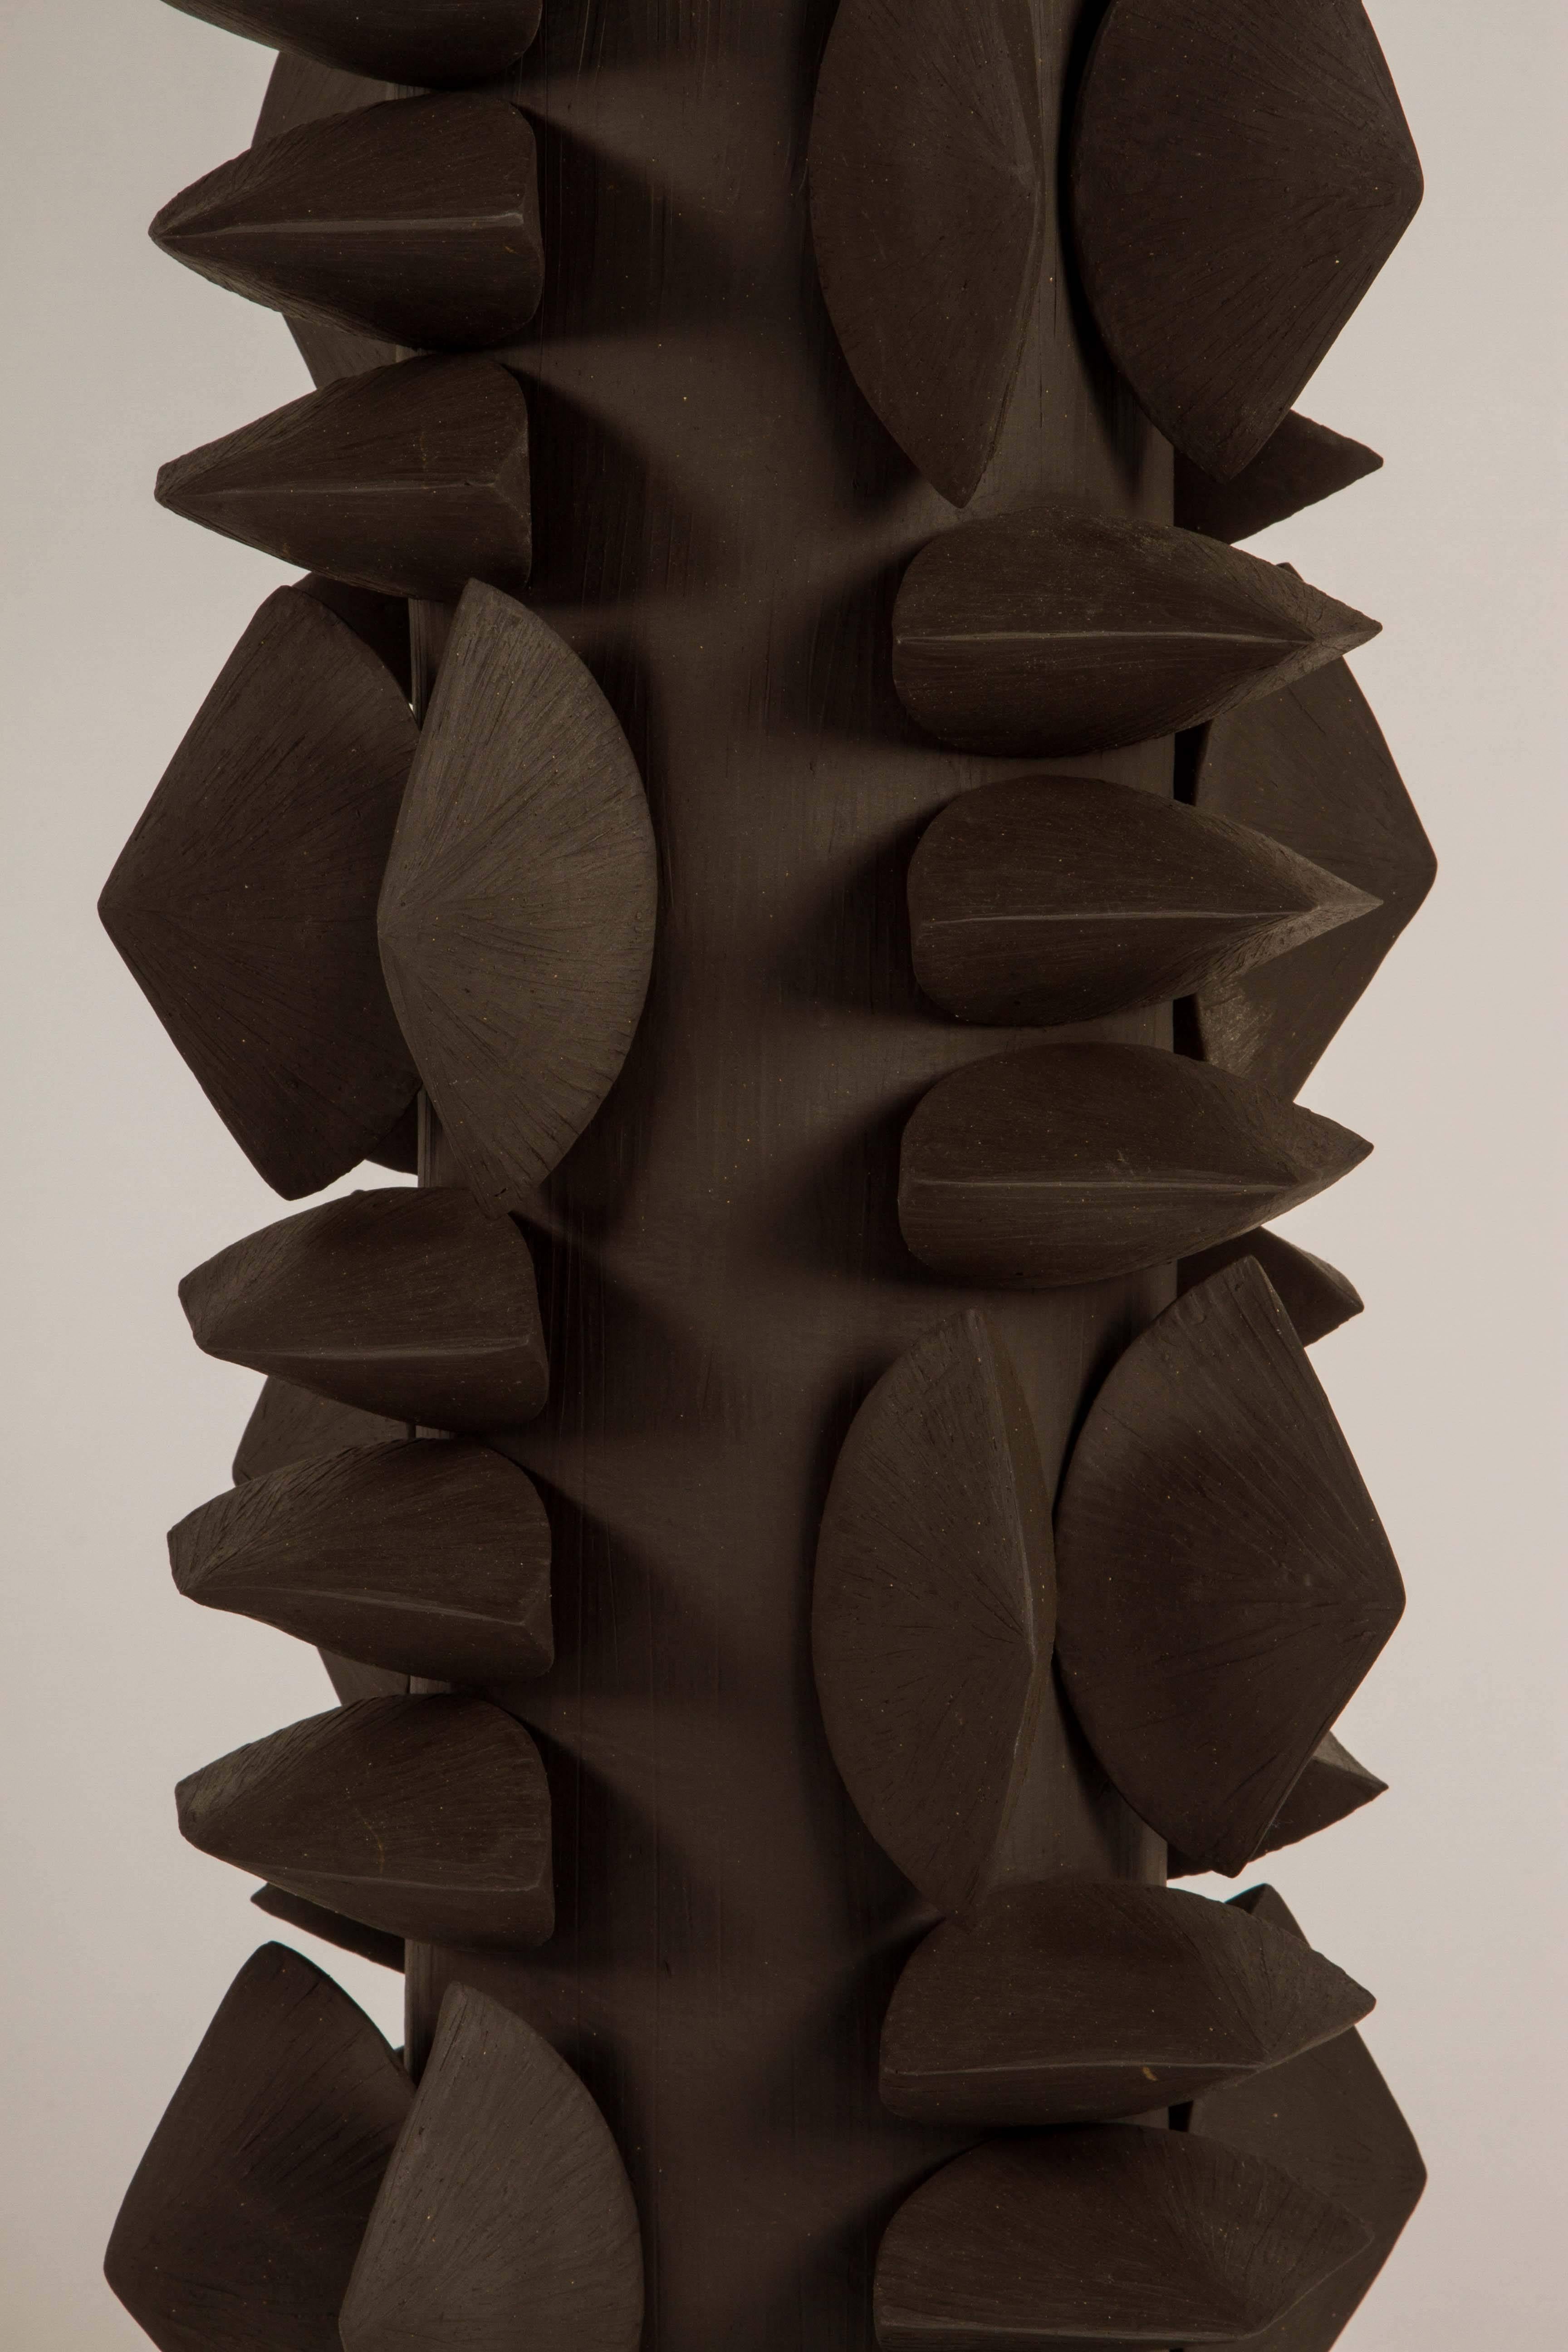 Eine einzigartige und auffällige Tischleuchte.  Unsere Titia-Lampe ist eine Zusammenarbeit zwischen Dragonette Private Label und Titia Estes. Estes, ein in LA ansässiger Keramiker, hat diese außergewöhnlichen Gefäße angefertigt, aus denen diese